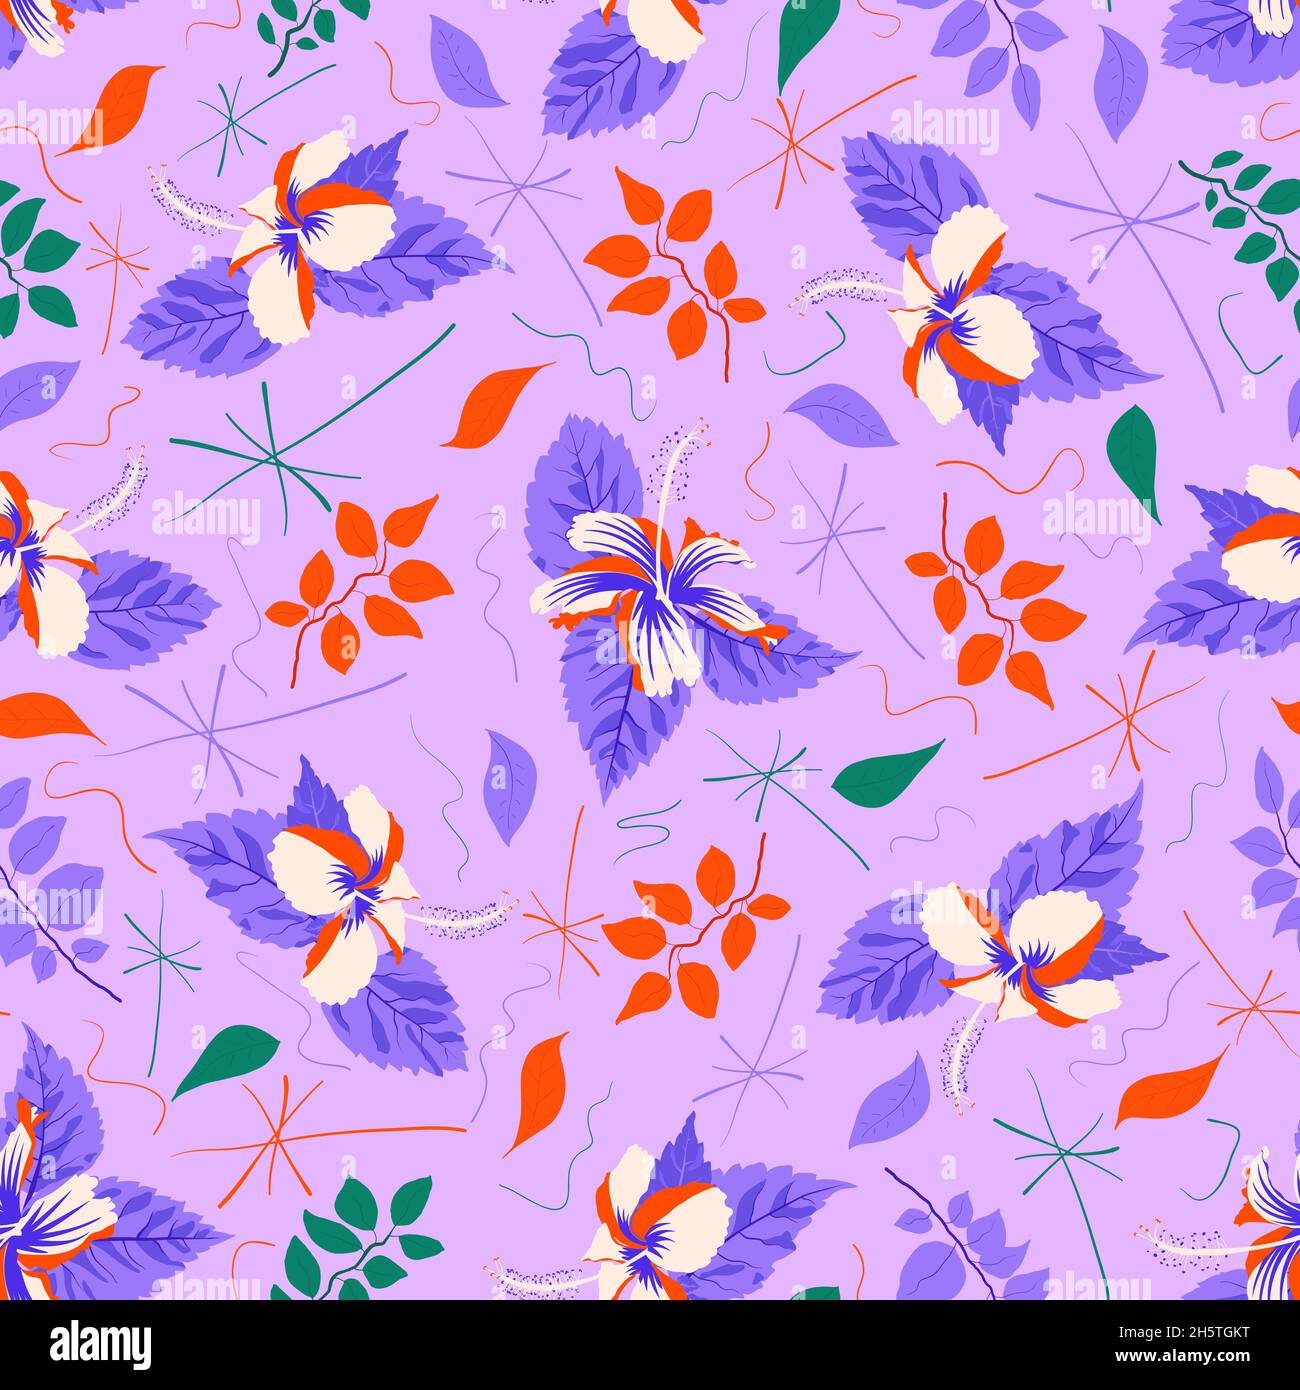 Botanisches Laub über dem abstrakten Hibiscus rosa sinensis-Muster. Symmetrische Vektor Grafik Design Artwork für Vorhänge, Servietten, Hankie, Handtuch, Wandbespannung etc. Stock Vektor